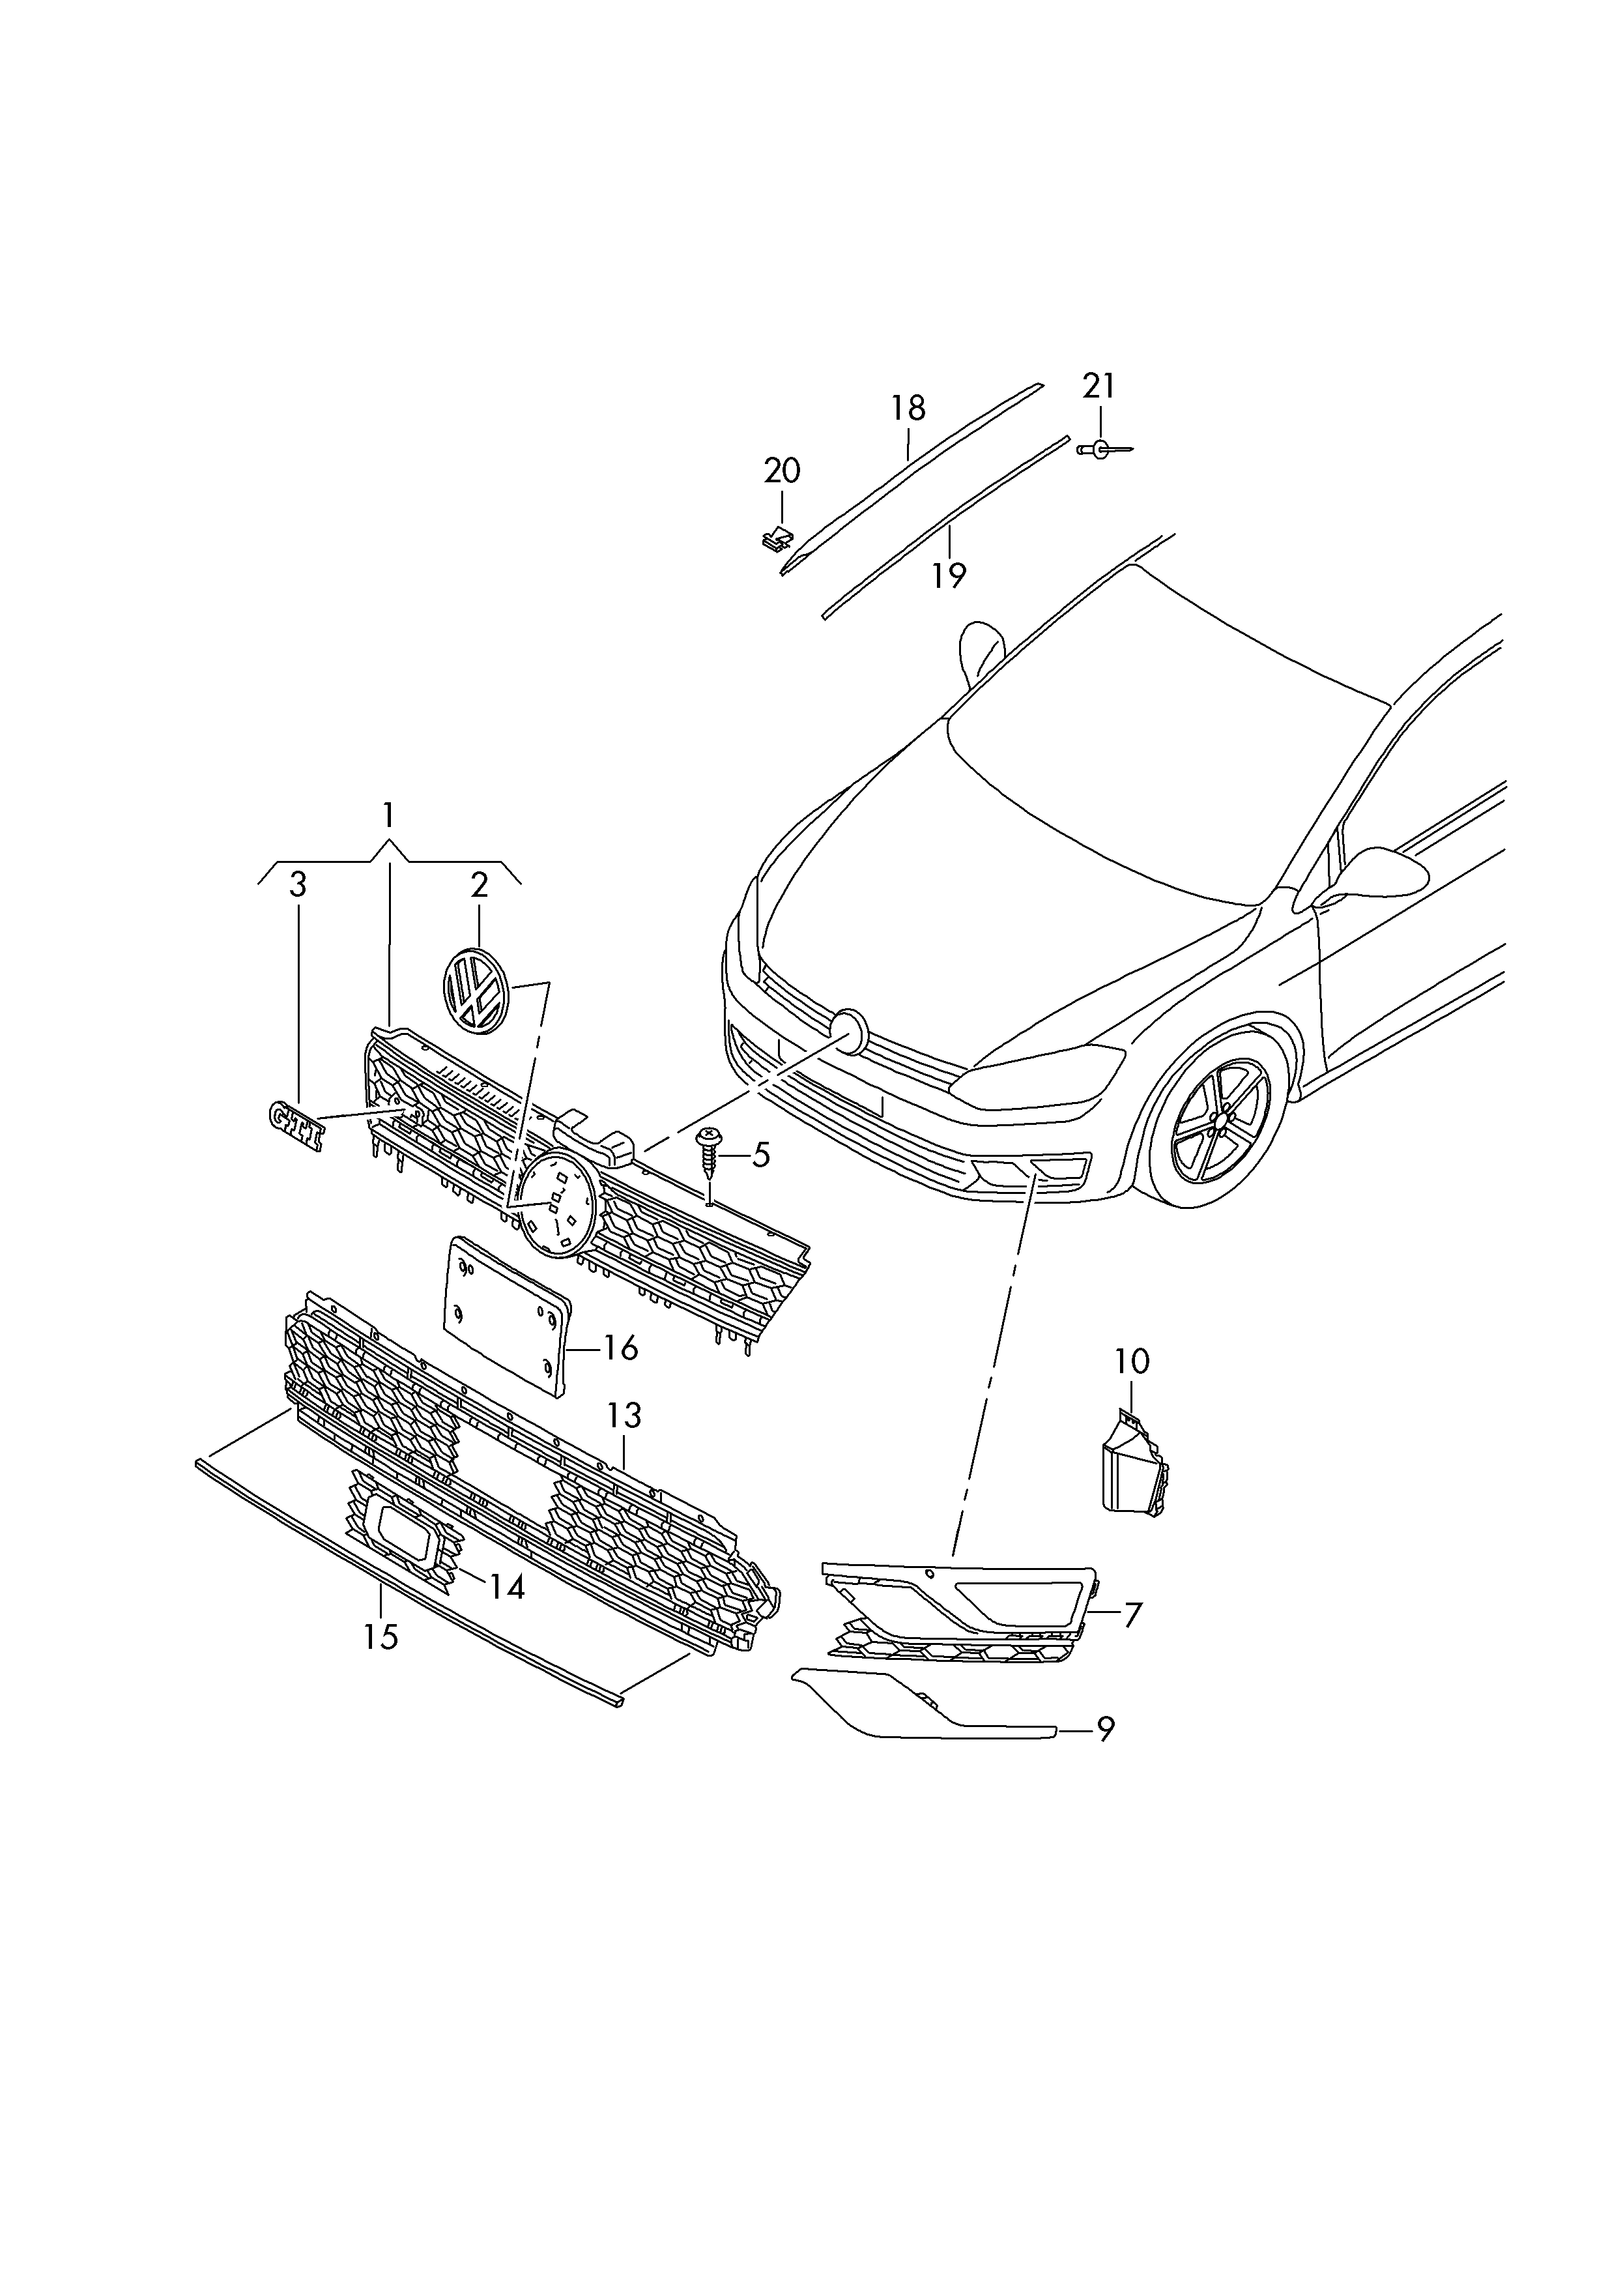 Radiator grilleVent grille  - Golf/Variant/4Motion - golf